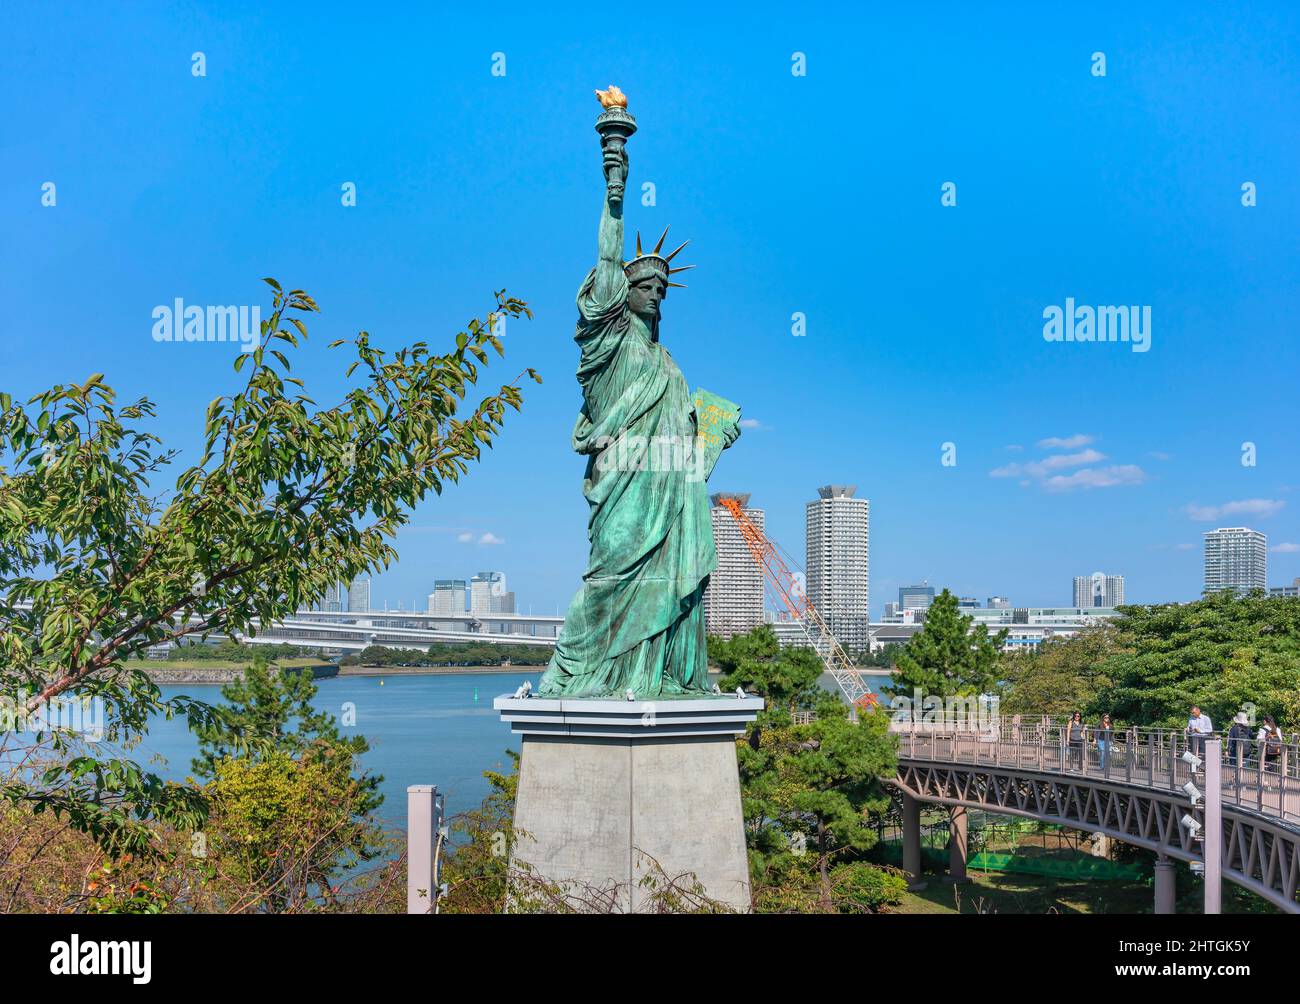 tokyo, giappone - ottobre 28 2021: Replica della Statua della libertà di Bartholdi e Eiffel eretta nel 2000 dopo le commemorazioni dell' anno francese Foto Stock